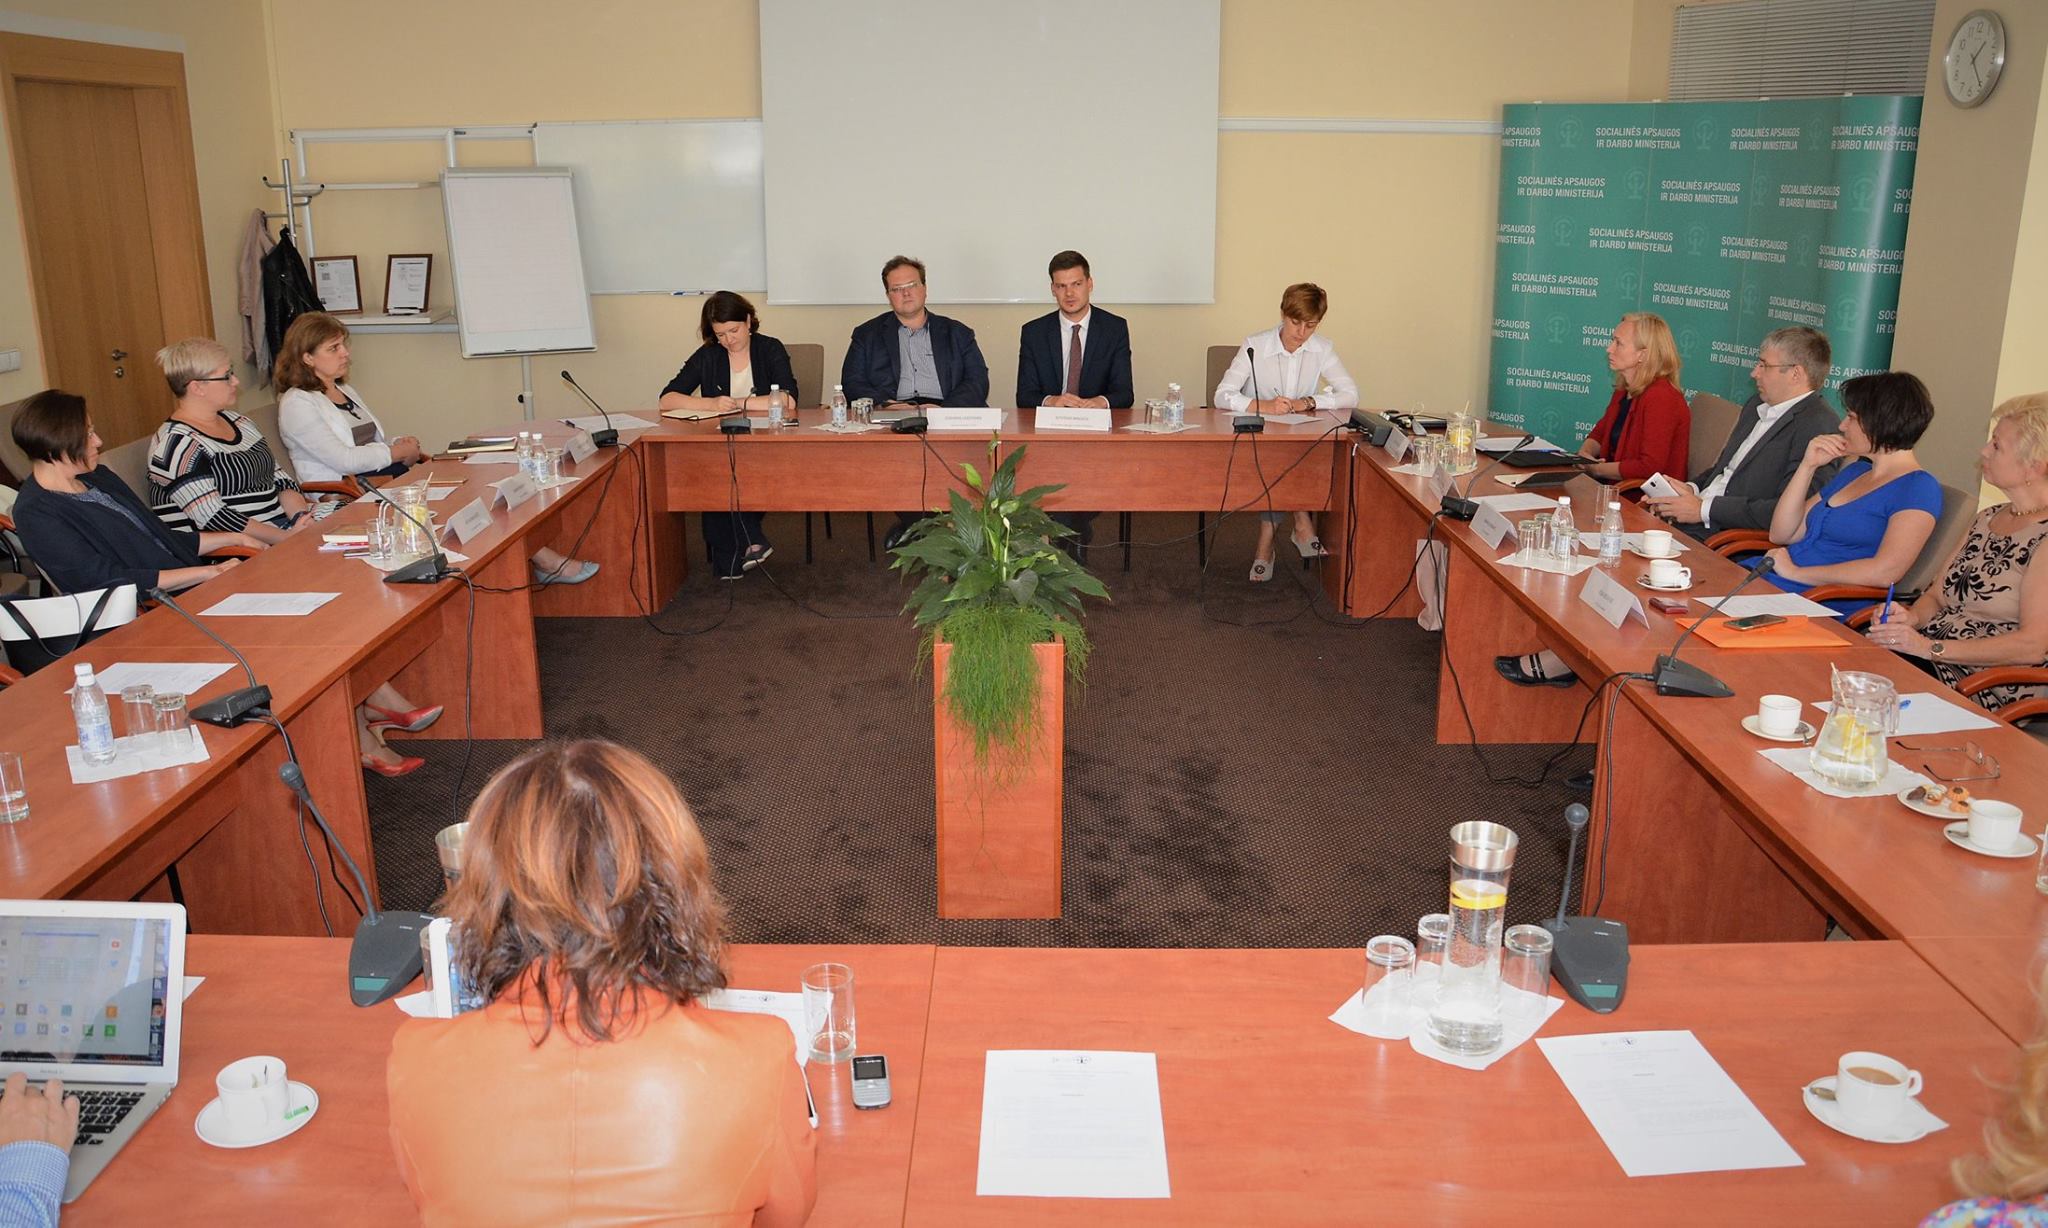 HoCare: Stakeholder meeting in Vilnius